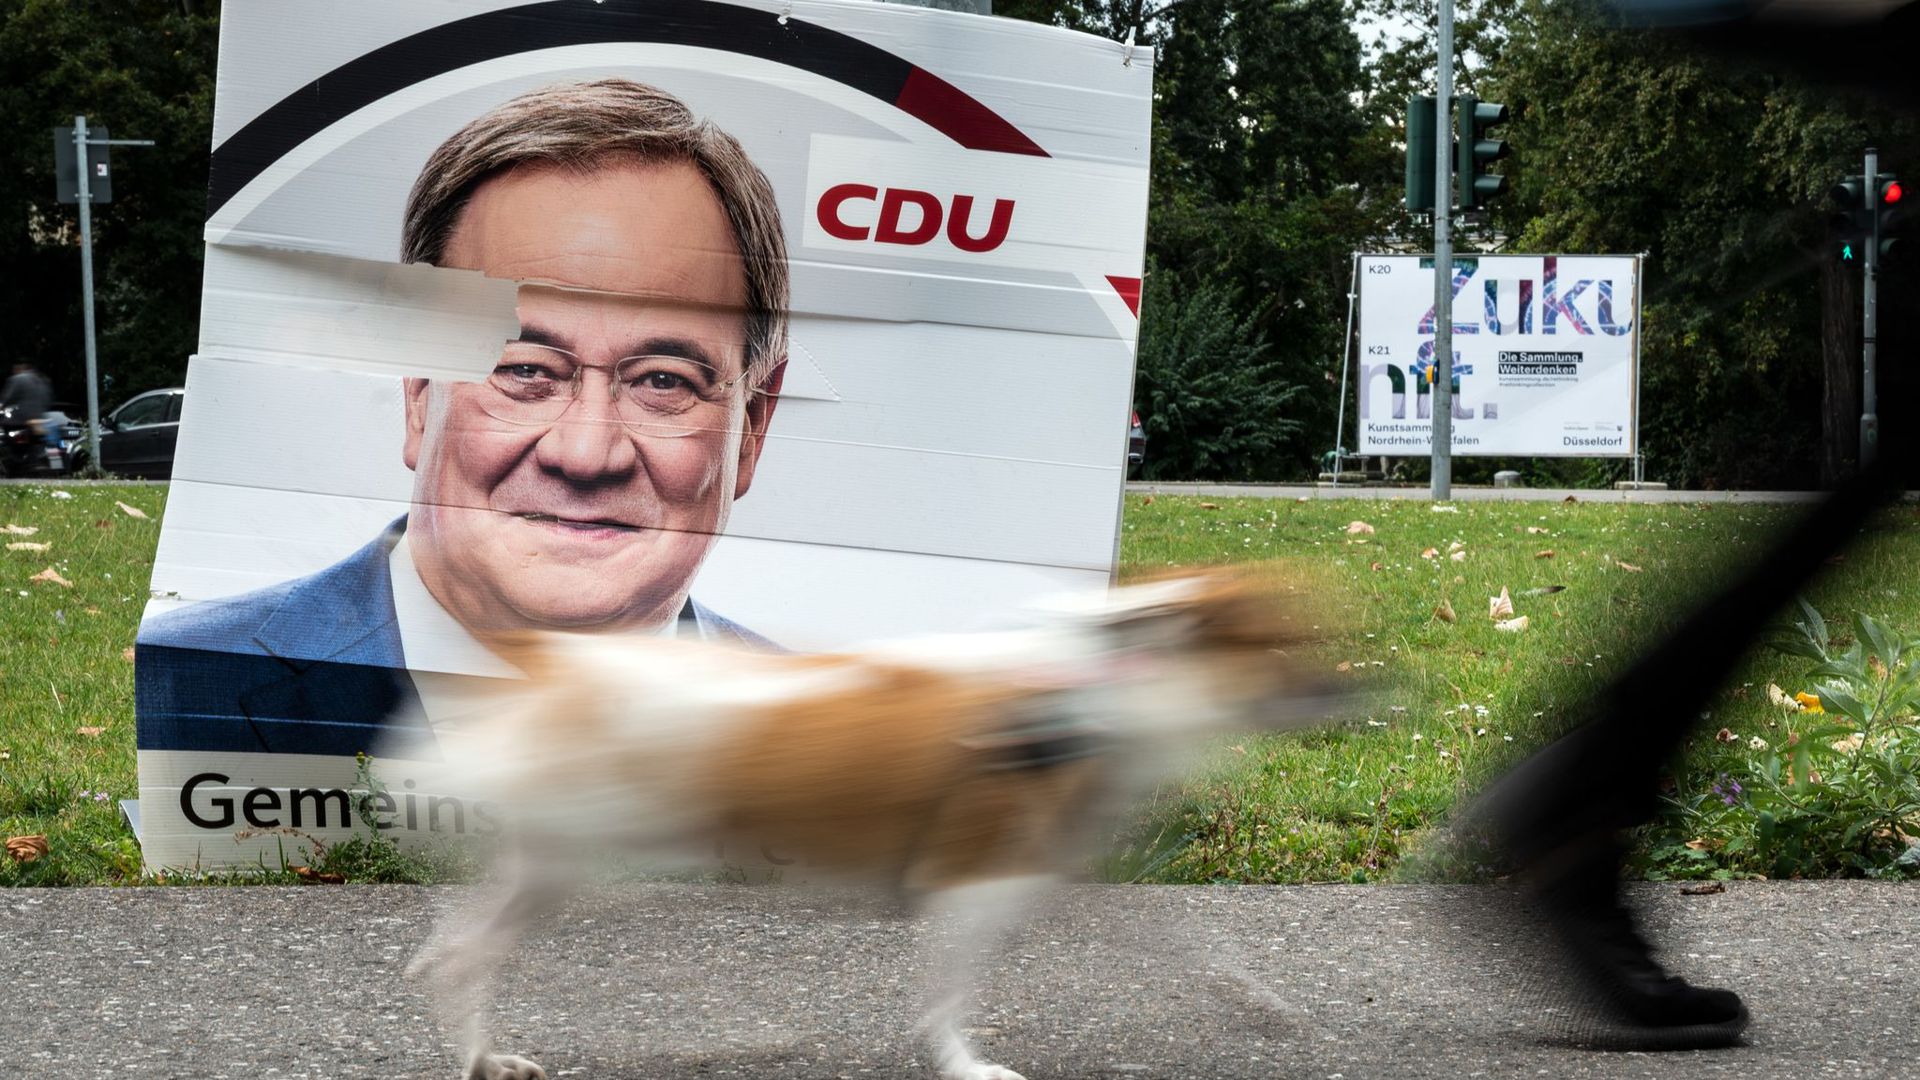 Nachdem Armin Laschet die CDU bei der Bundestagswahl zu einem historisch schlechten Ergebnis geführt hat, sieht er sich mit immer mehr Kritik konfrontiert.